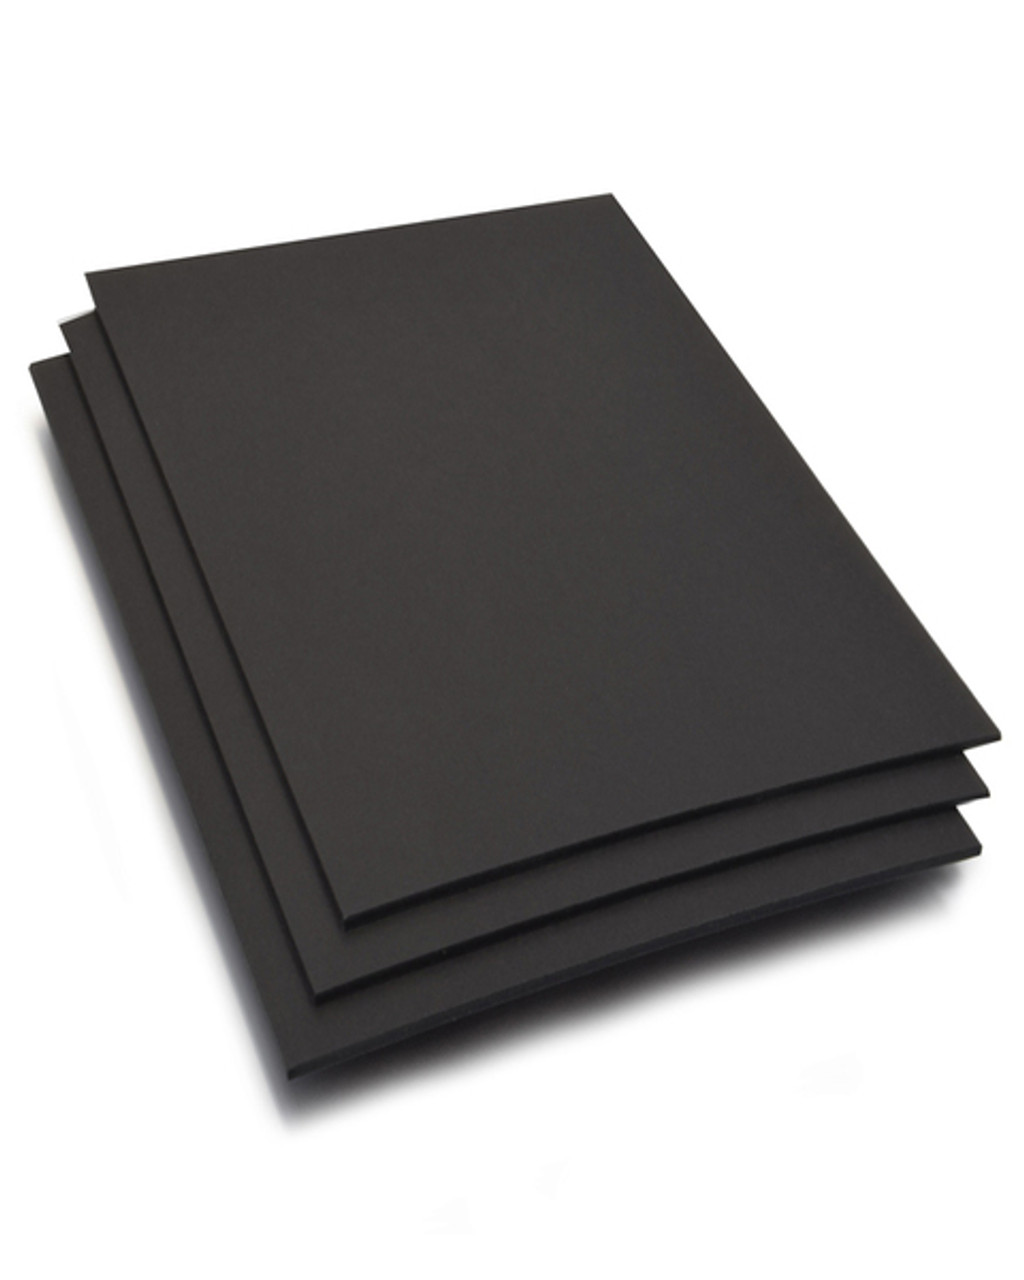 30 Packs 8 X 10 X 3/16 Inch Black Foam Board, Foam Core Backing Boards,  Backdrop